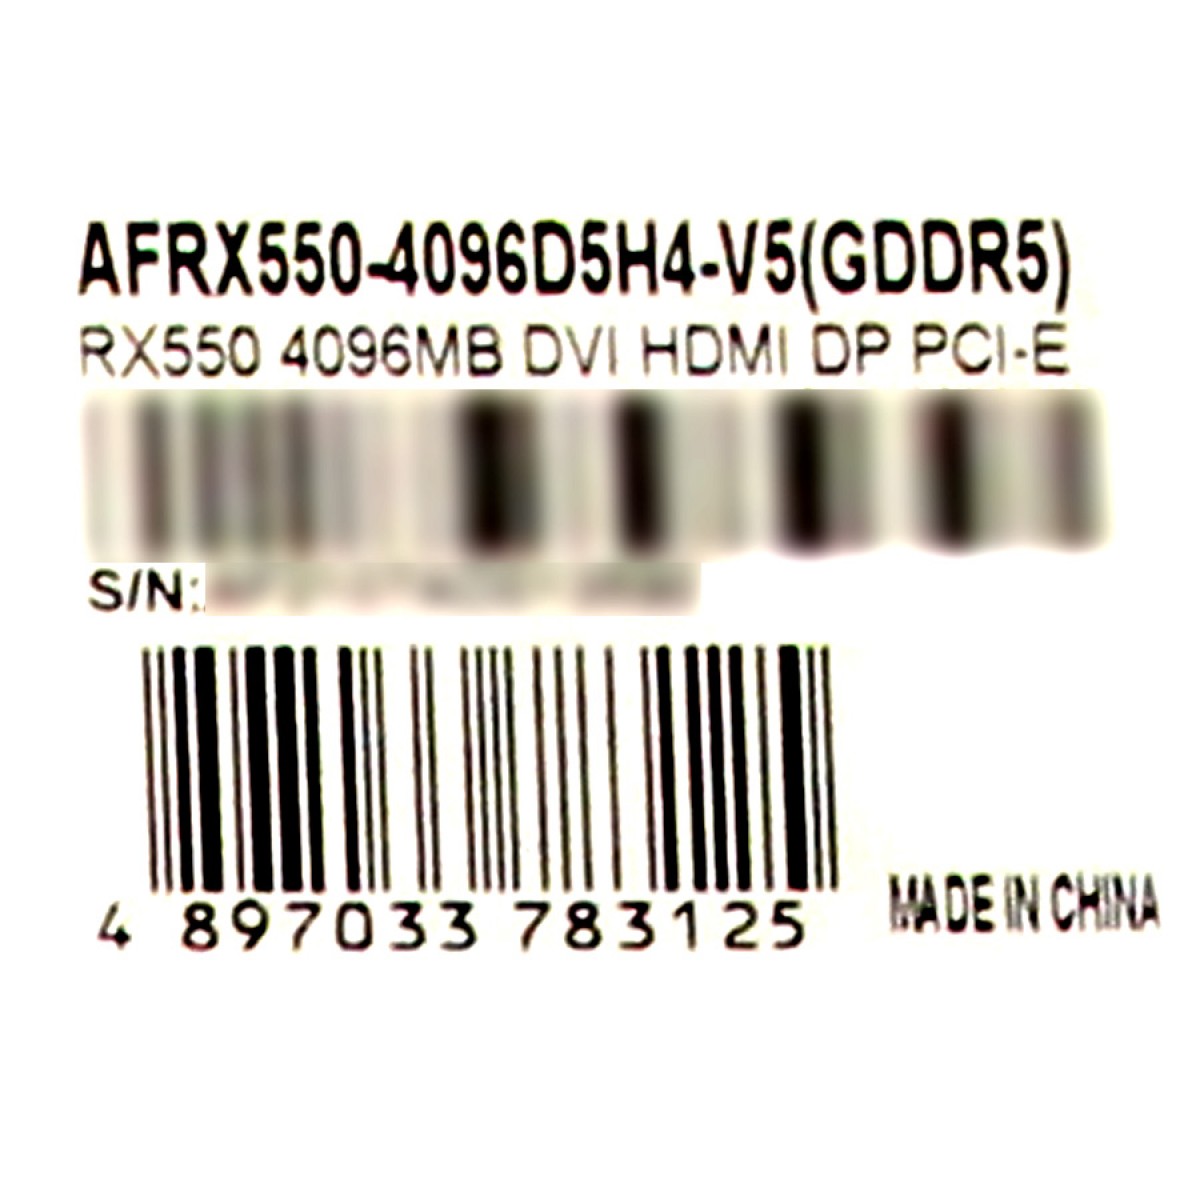 Placa de Vídeo Afox Radeon RX 550, 4GB, GDDR5, AFRX550-4096D5H4-V5